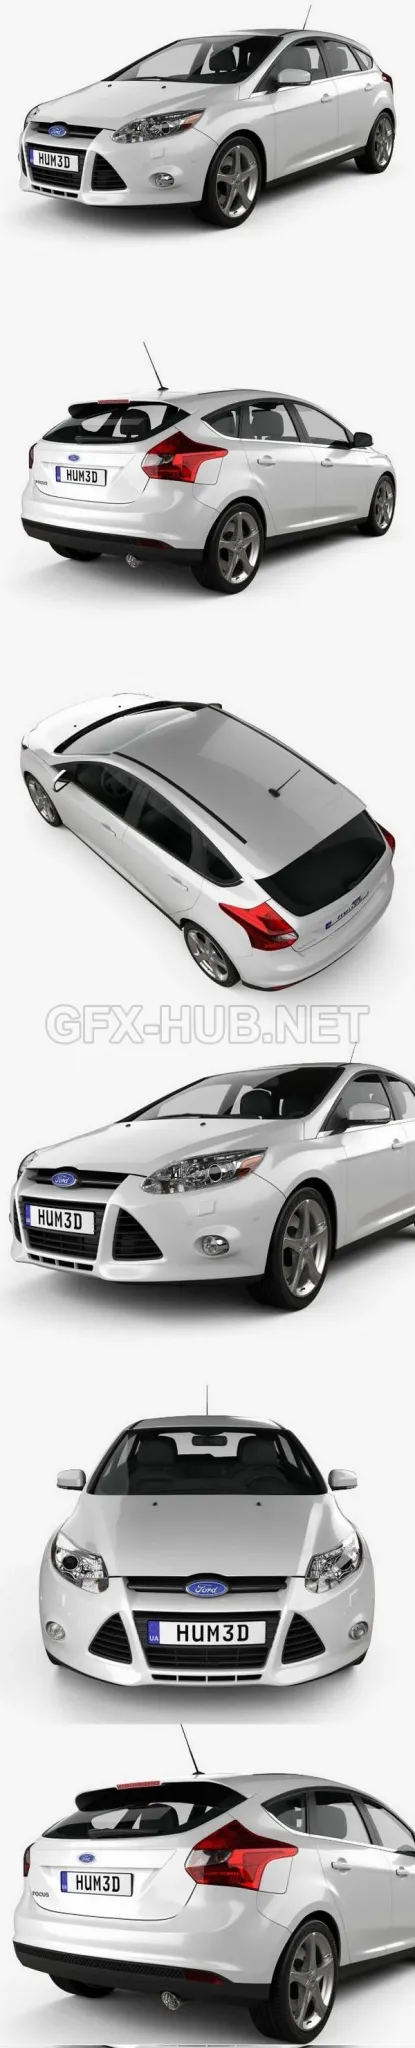 CAR – Ford Focus Hatchback 2011  3D Model